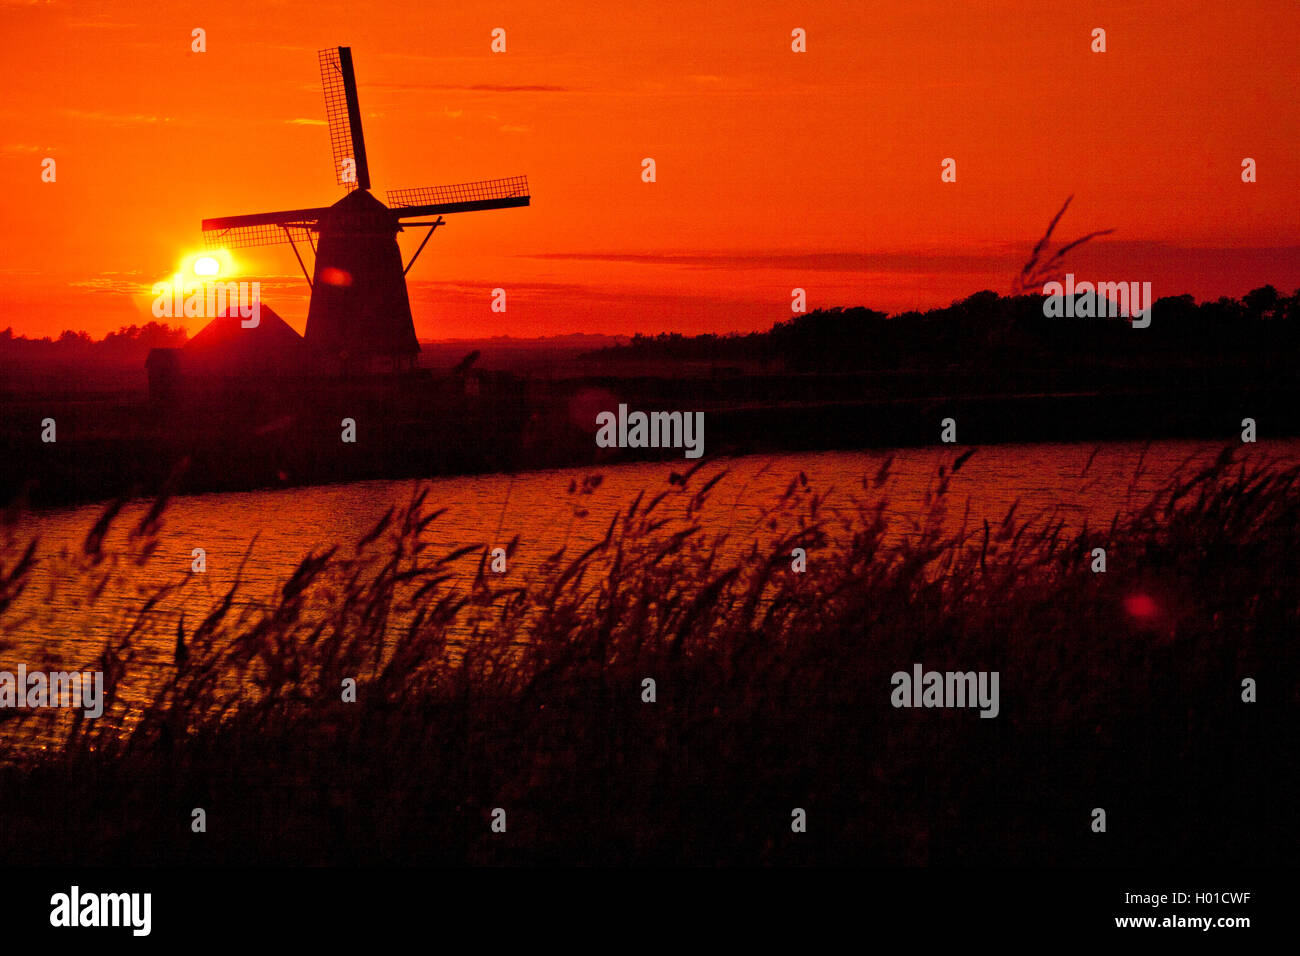 Windmuehle Het Noorden bei Sonnenuntergang, Niederlande, Texel | windmill Het Noorden at sunset, Netherlands, Texel | BLWS433391 Stock Photo